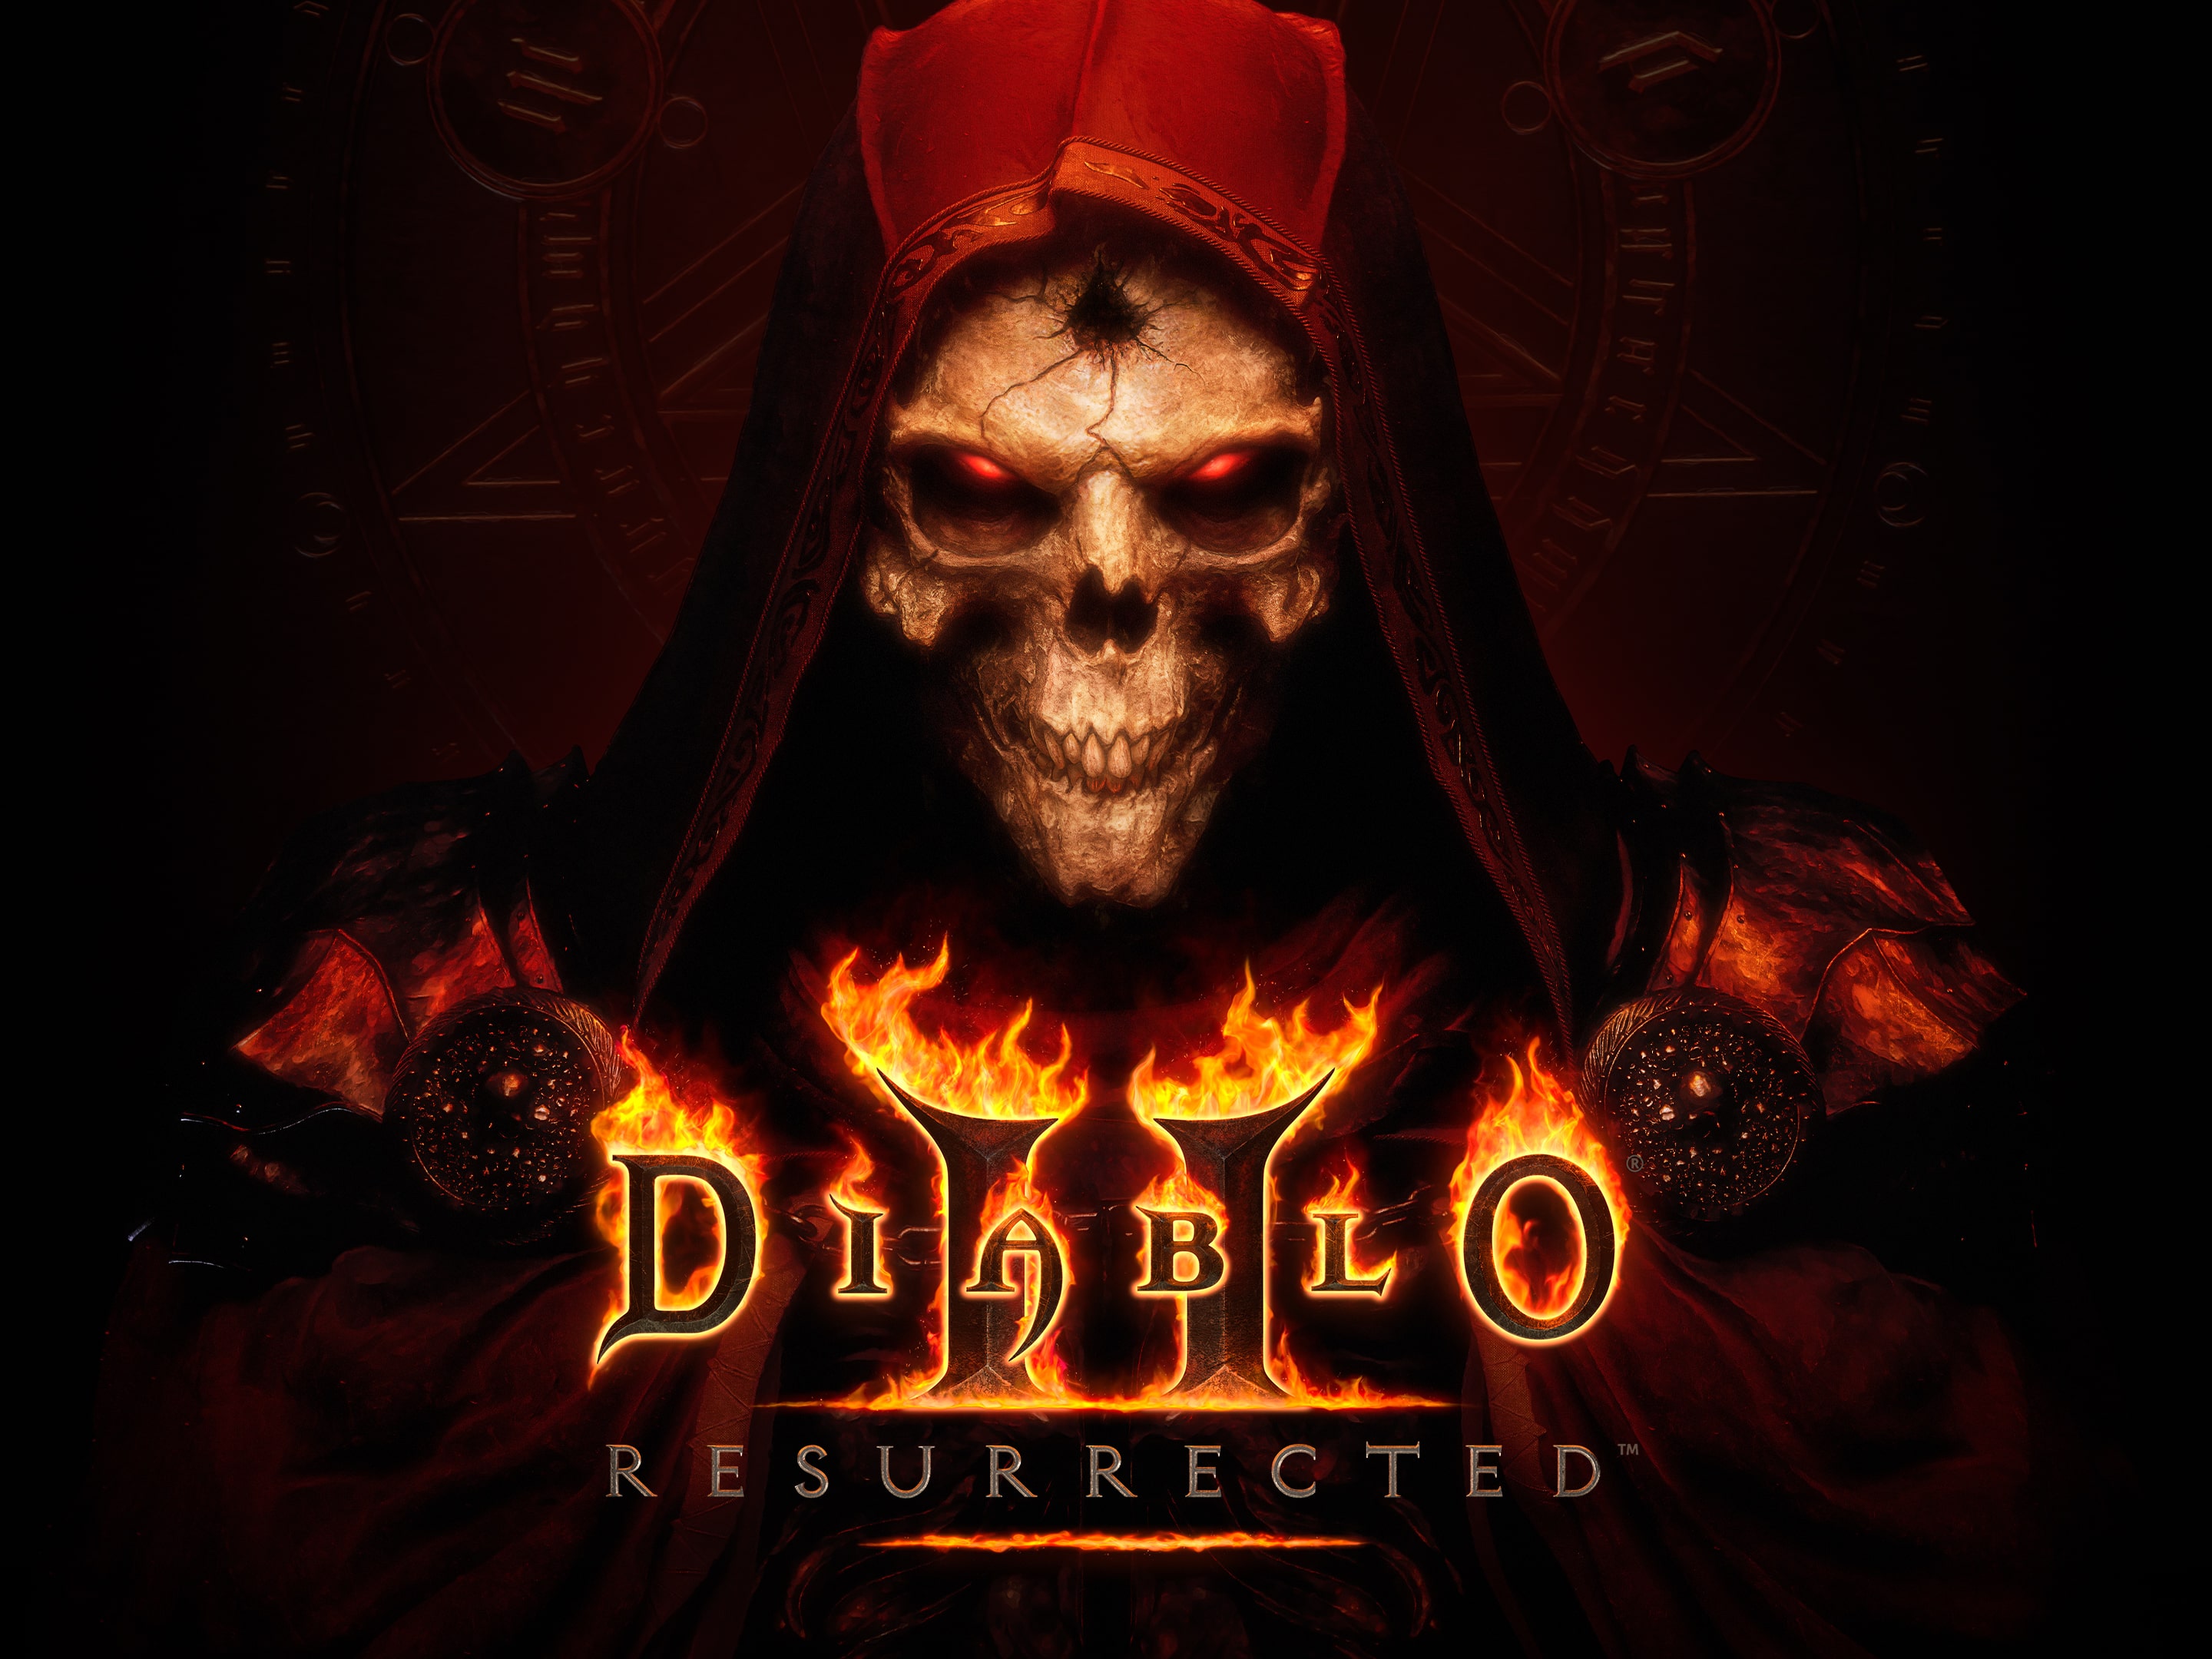 Diablo 4 (PS4) desde 48,18 €